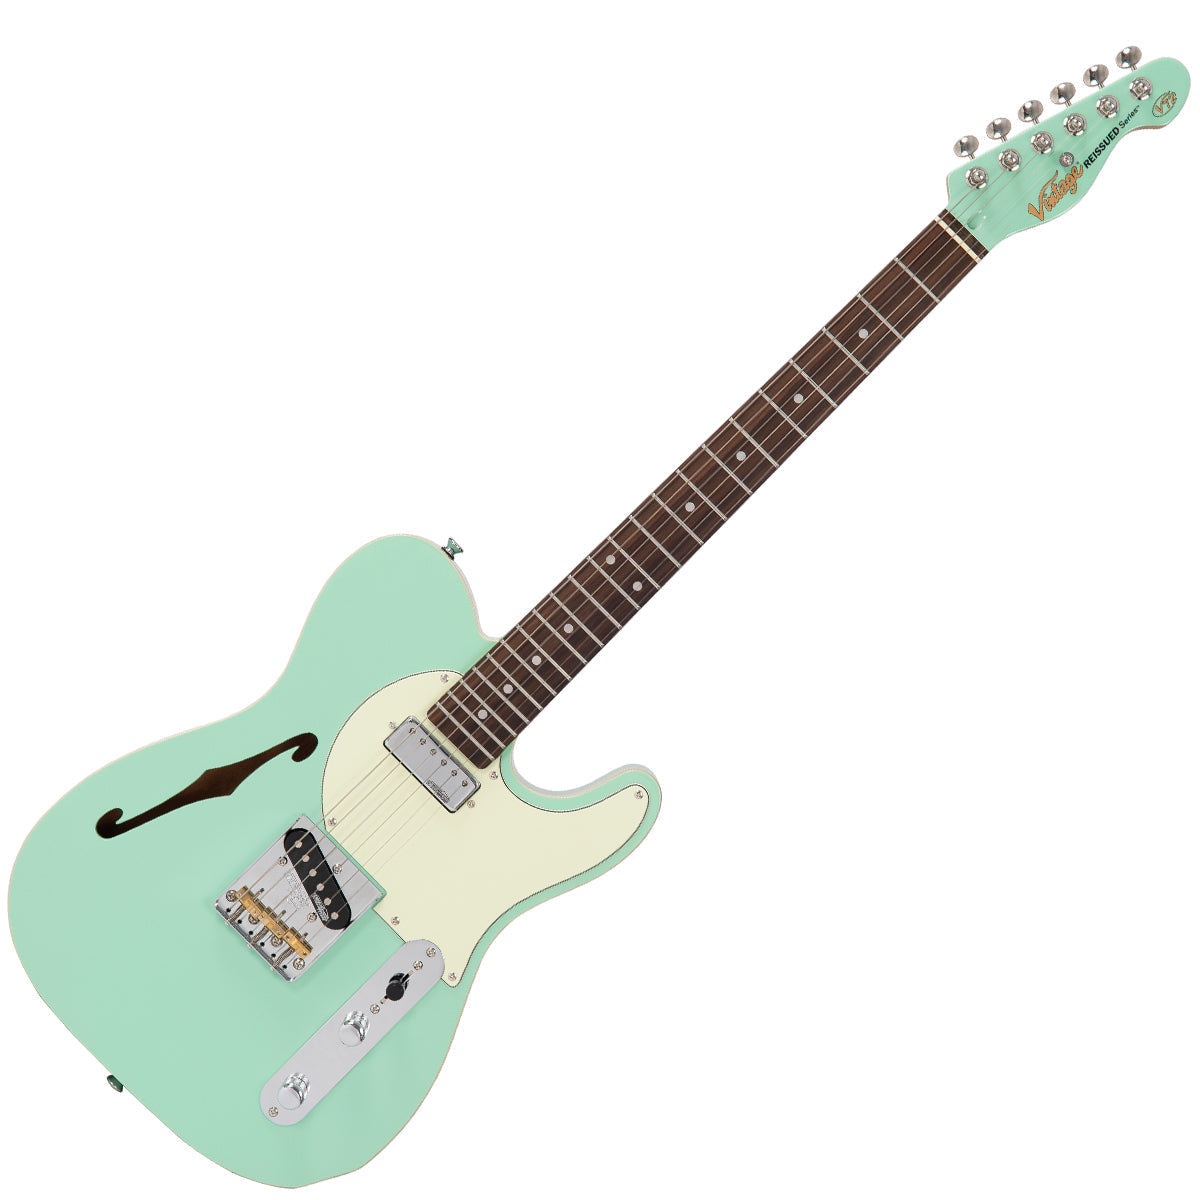 Vintage V72 ReIssued Electric Guitar ~ Ventura Green, Electric Guitar for sale at Richards Guitars.